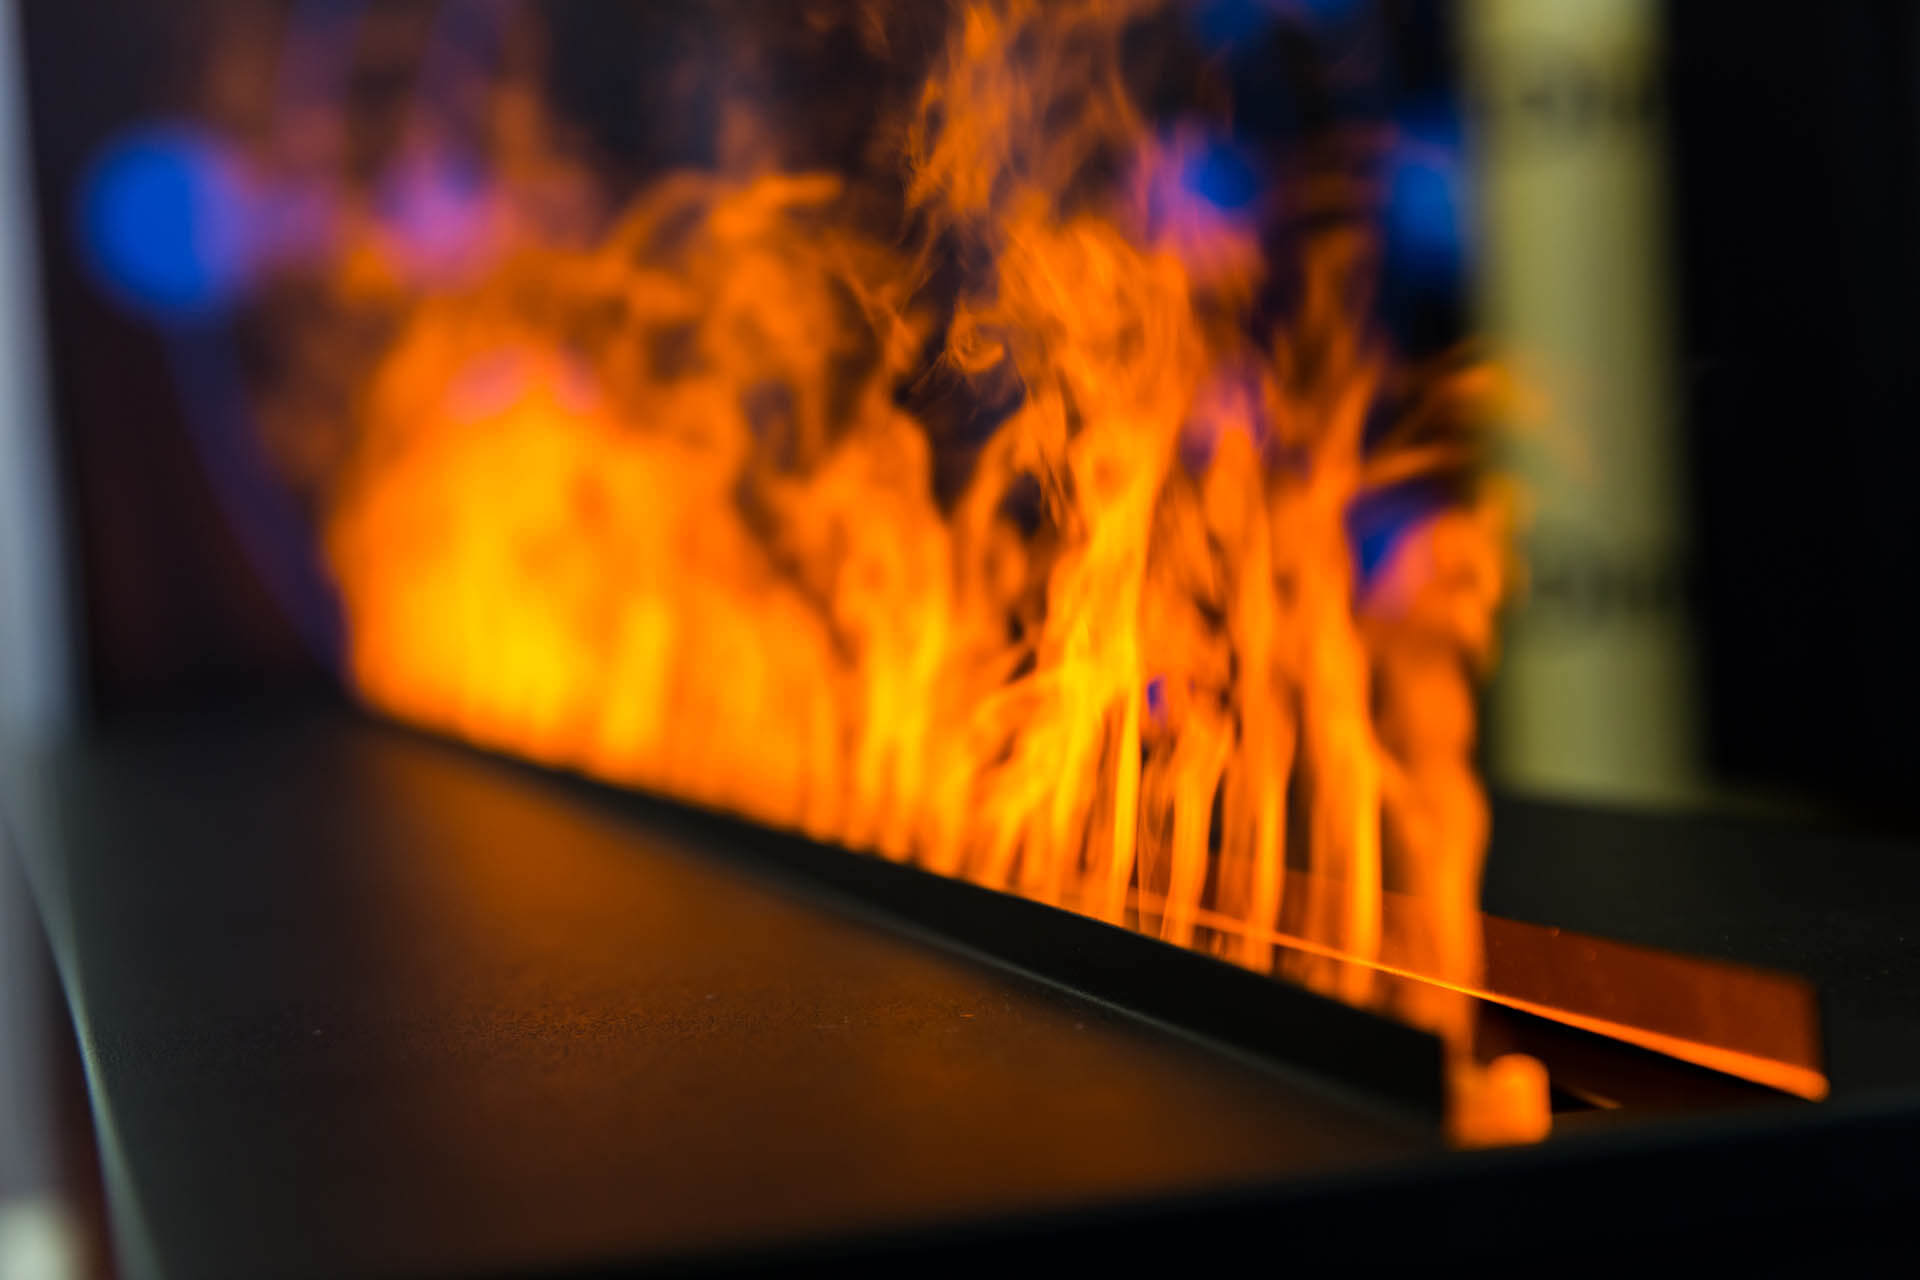 Flammen eines freistehenden Bioethanol Kamins, eine potenzielle Gefahr